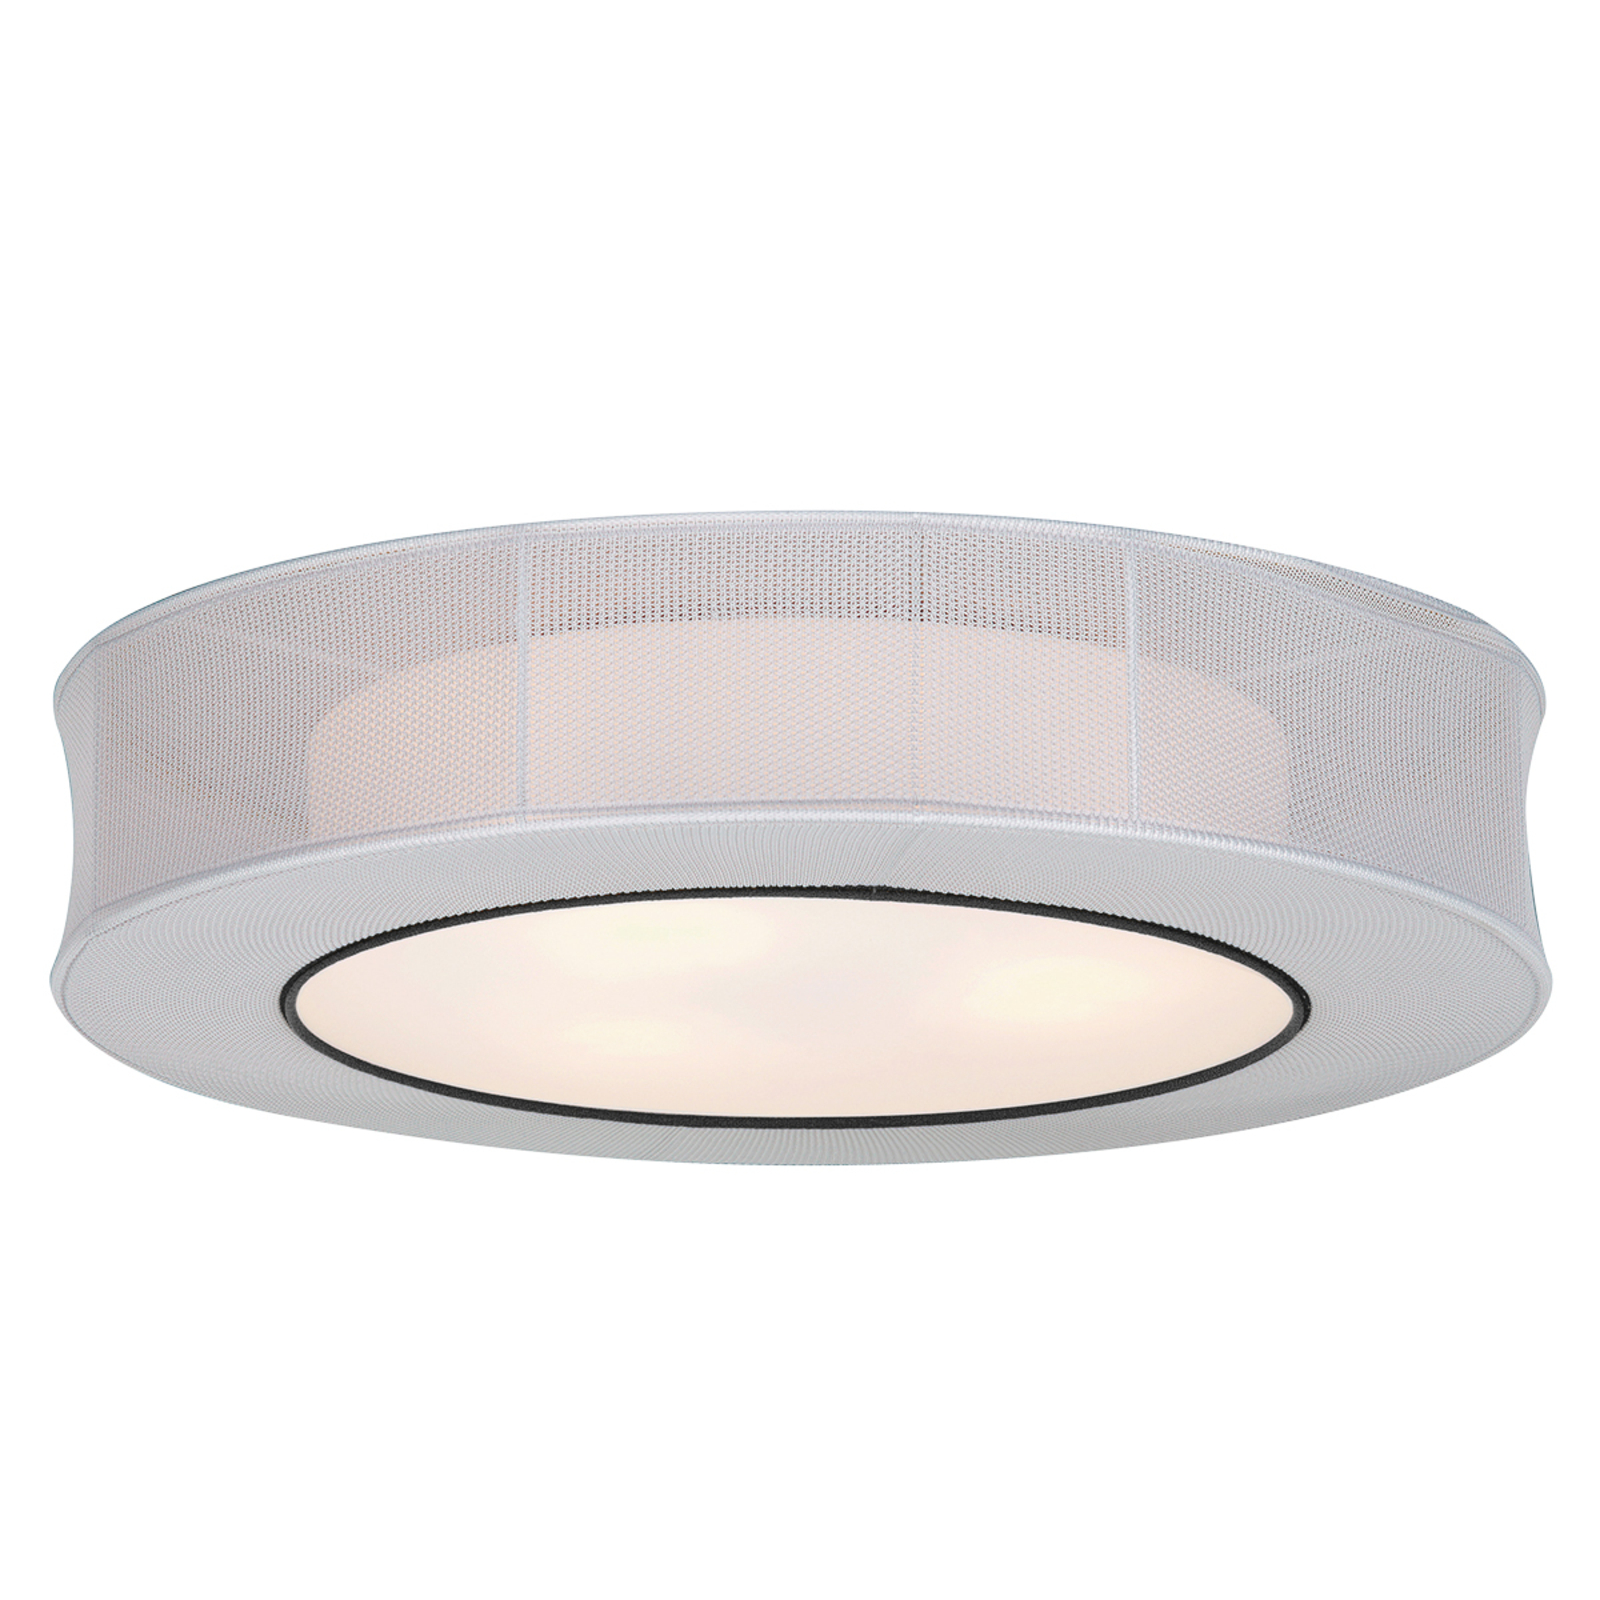 Round fabric ceiling lamp Felice